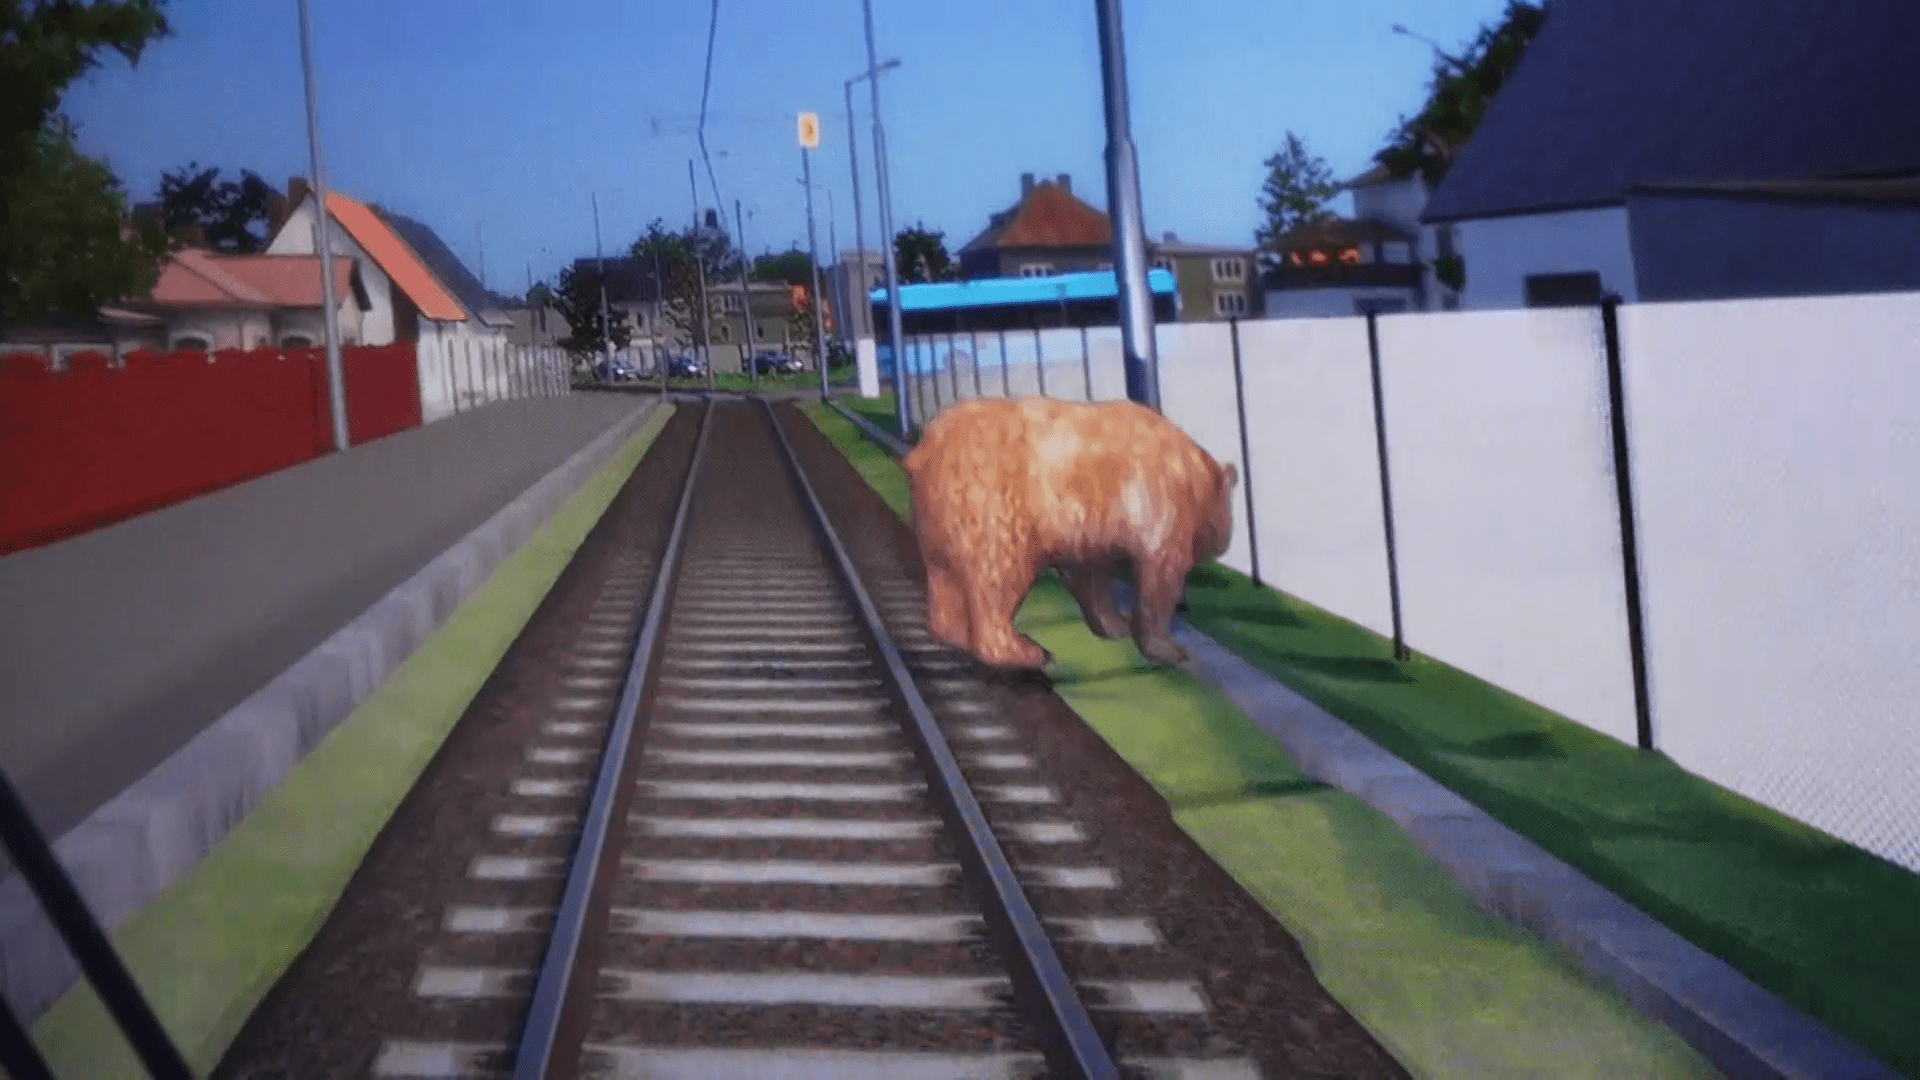 Lidi v Ostravě vystrašila zpráva, že by se po městě měl potulovat medvěd. Jak se ukázalo, kolující snímky vznikly v simulátoru dopravního podniku.